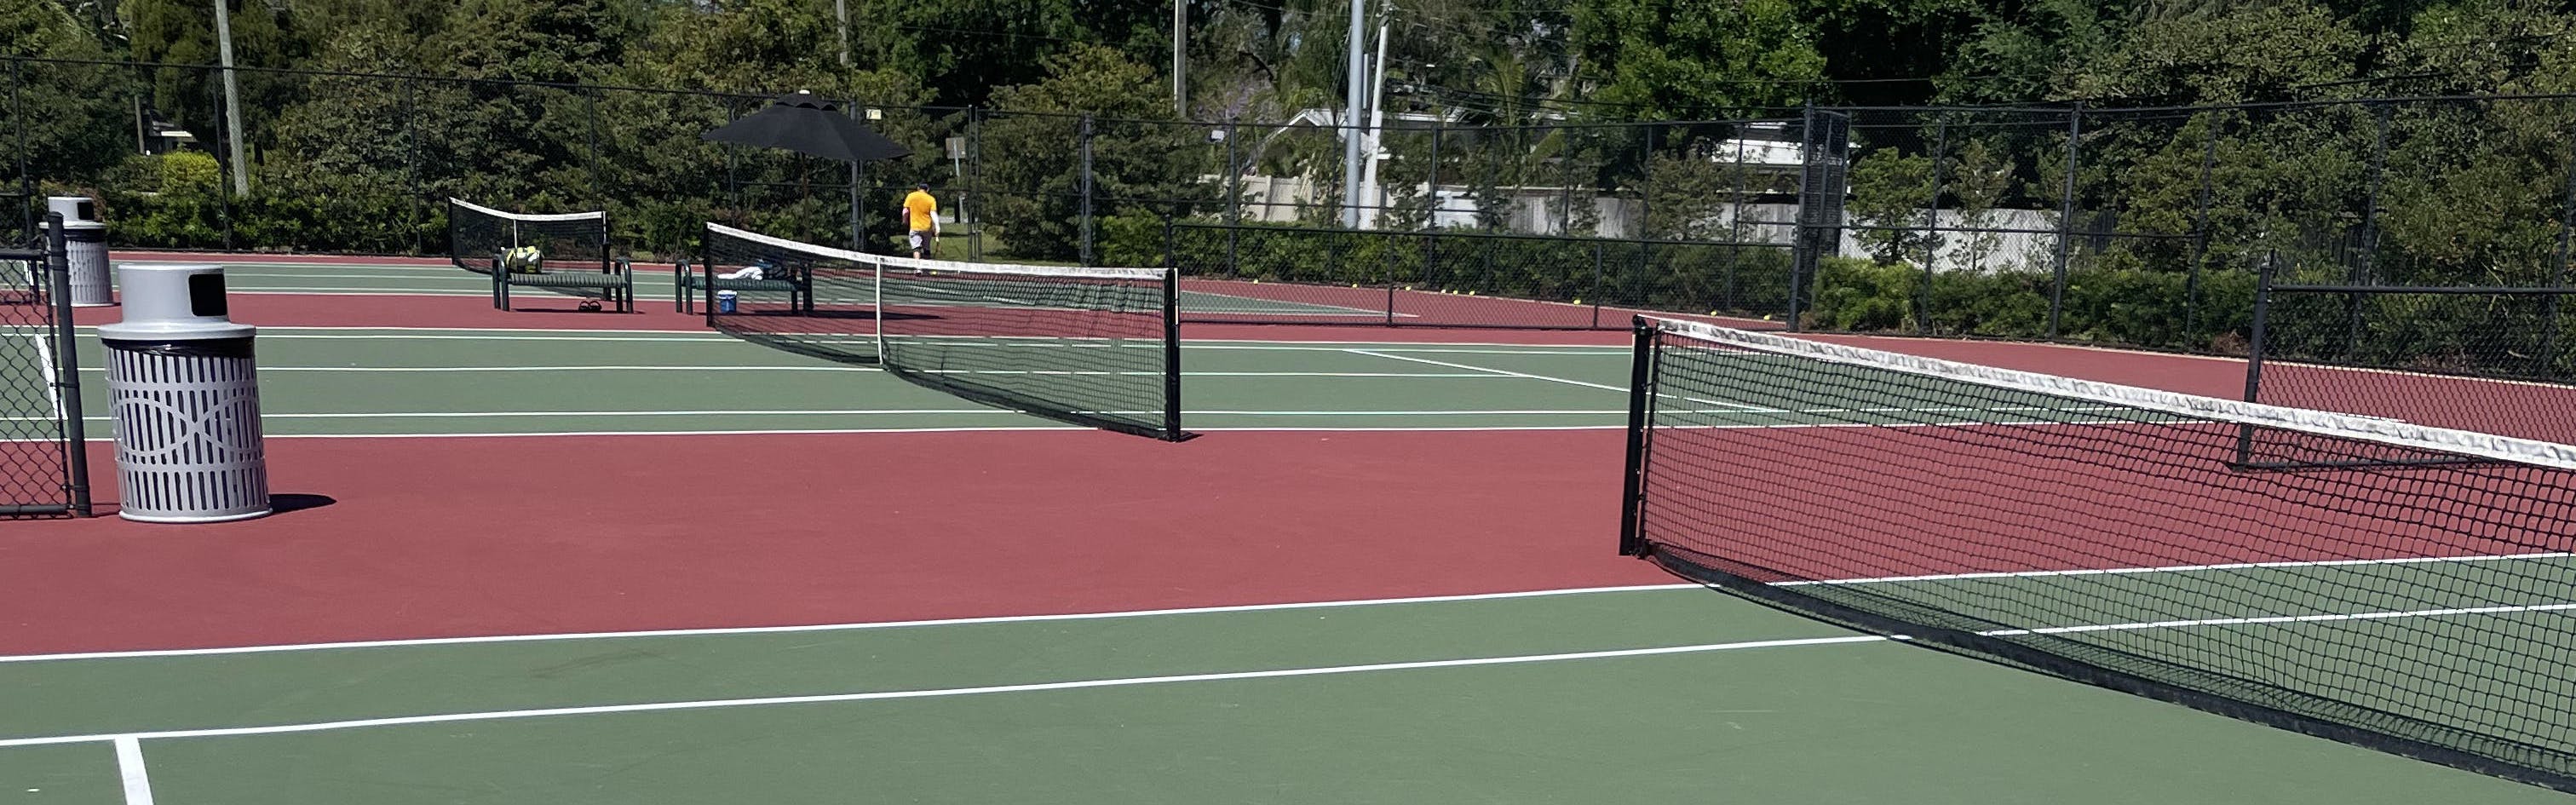 A tennis court. 